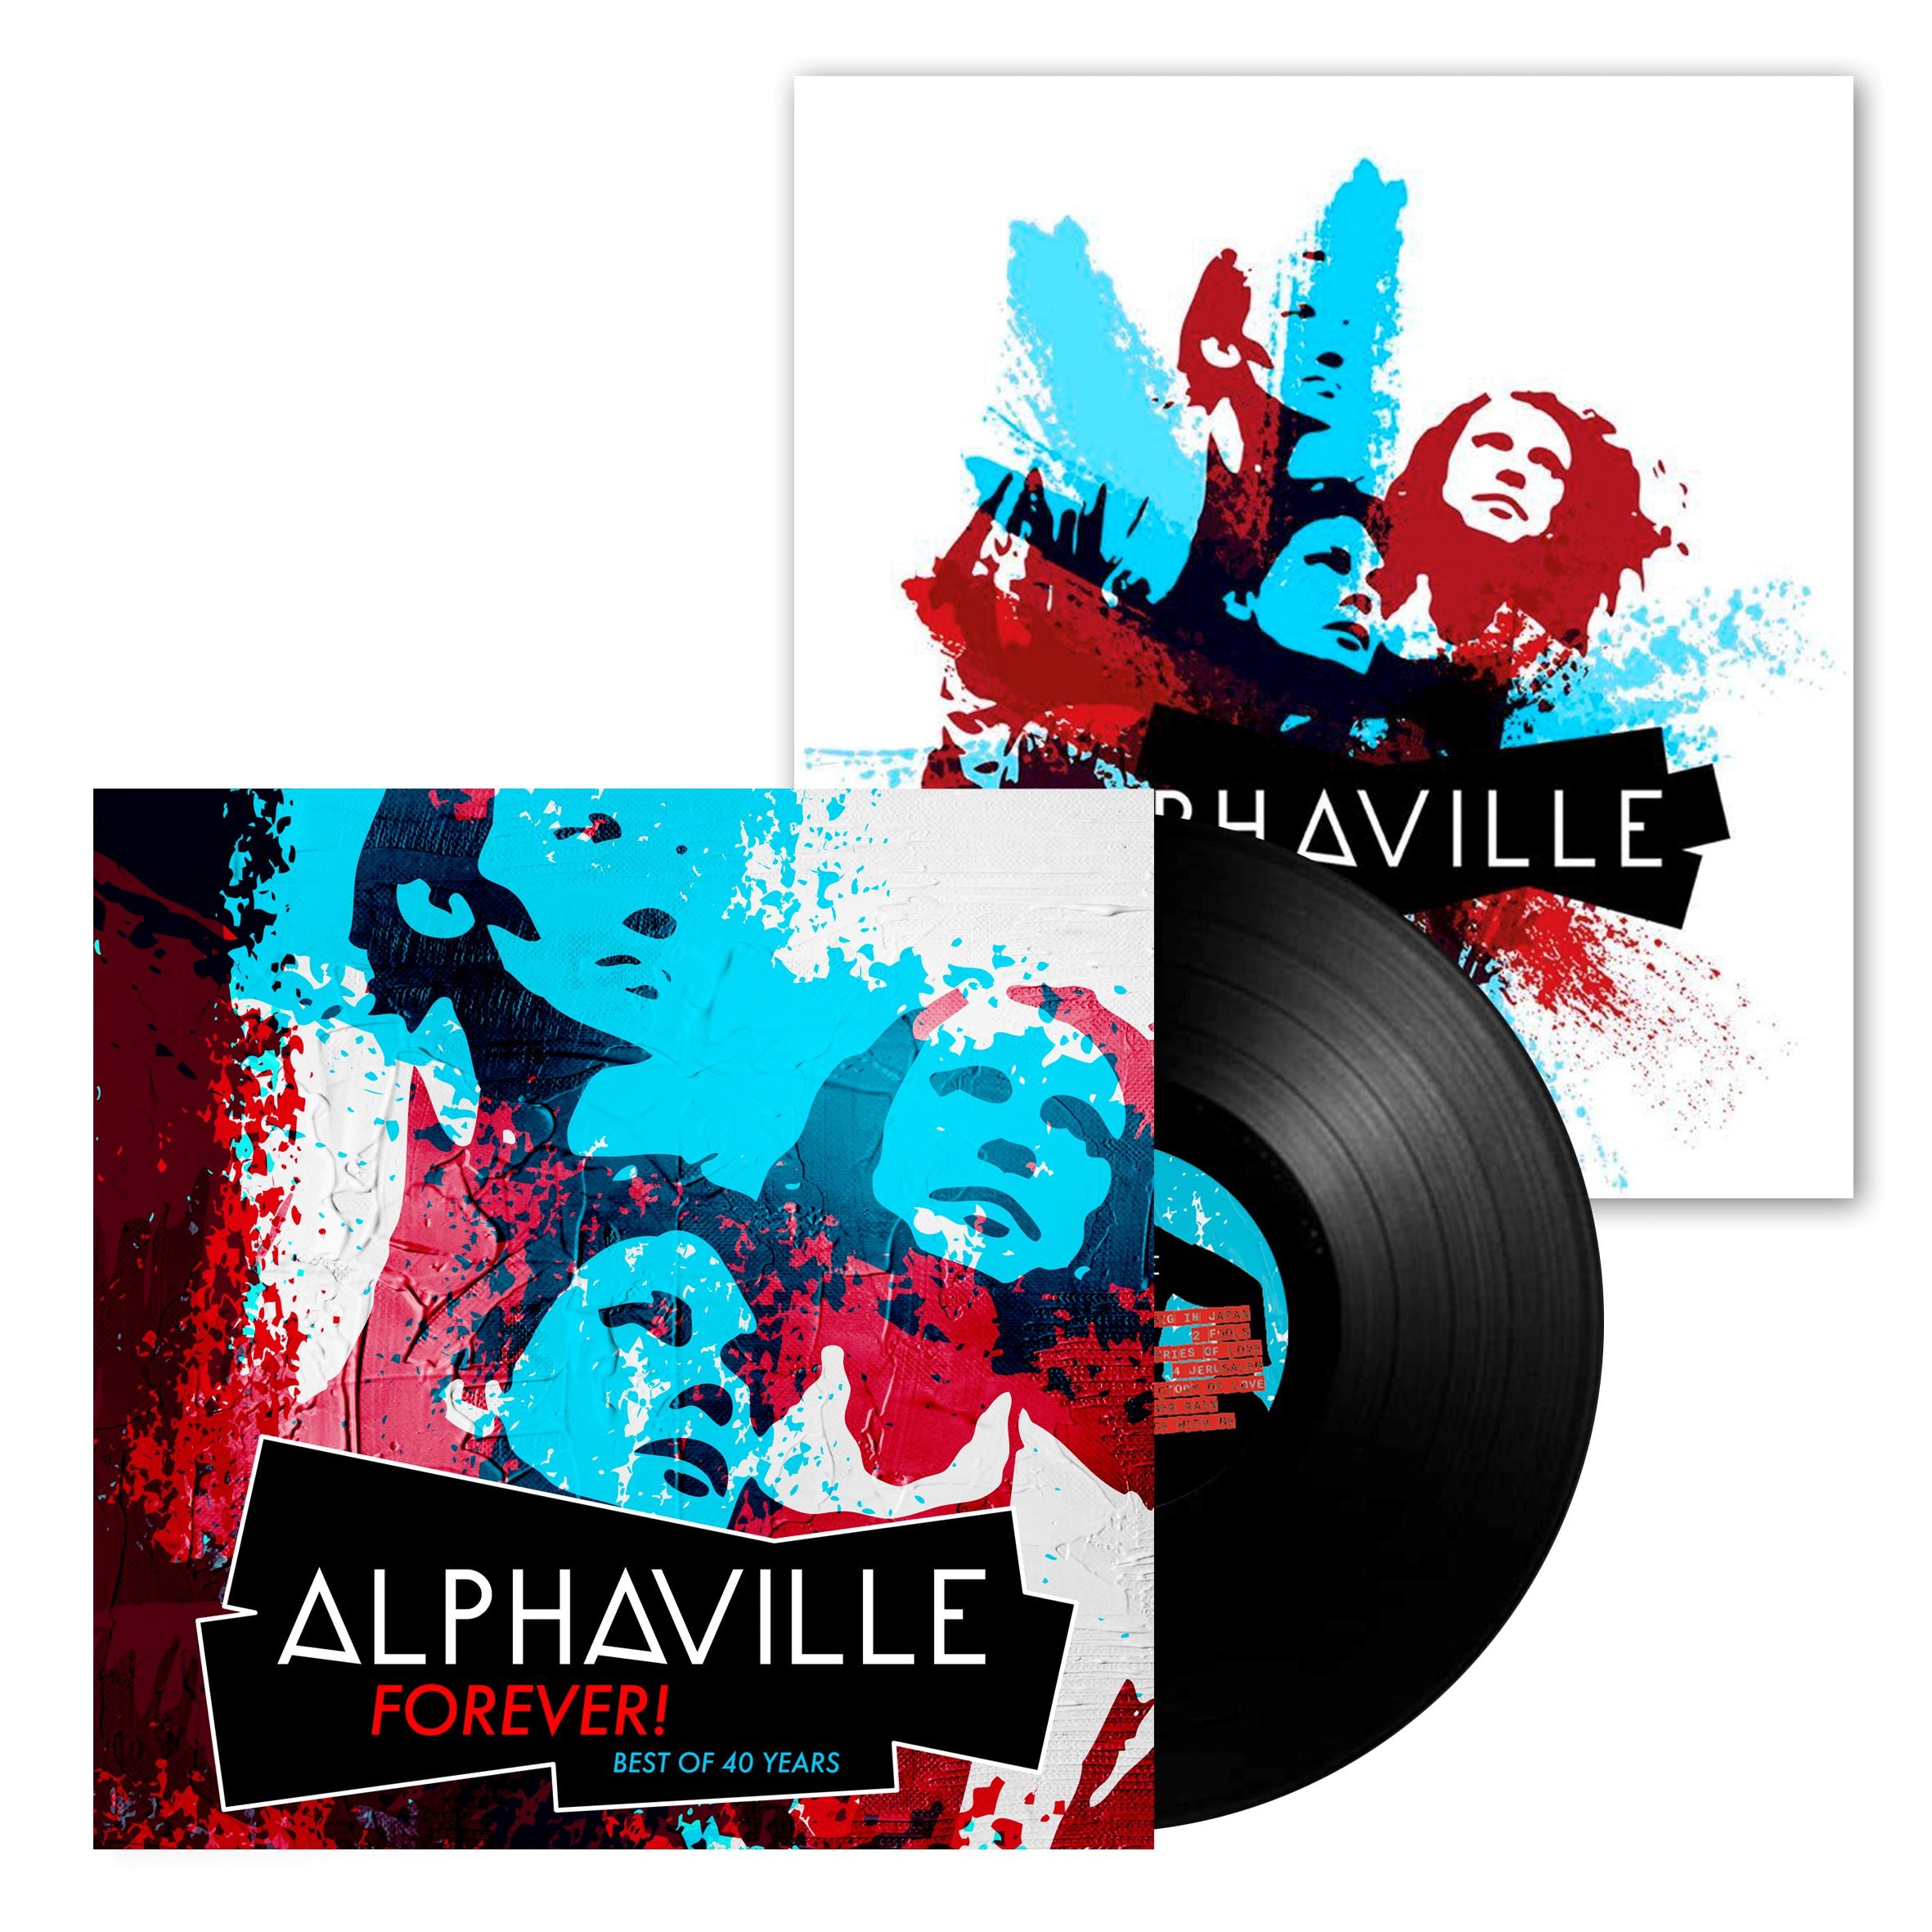 Alphaville - Alphaville - Forever! Best of 40 Years: Vinyl LP